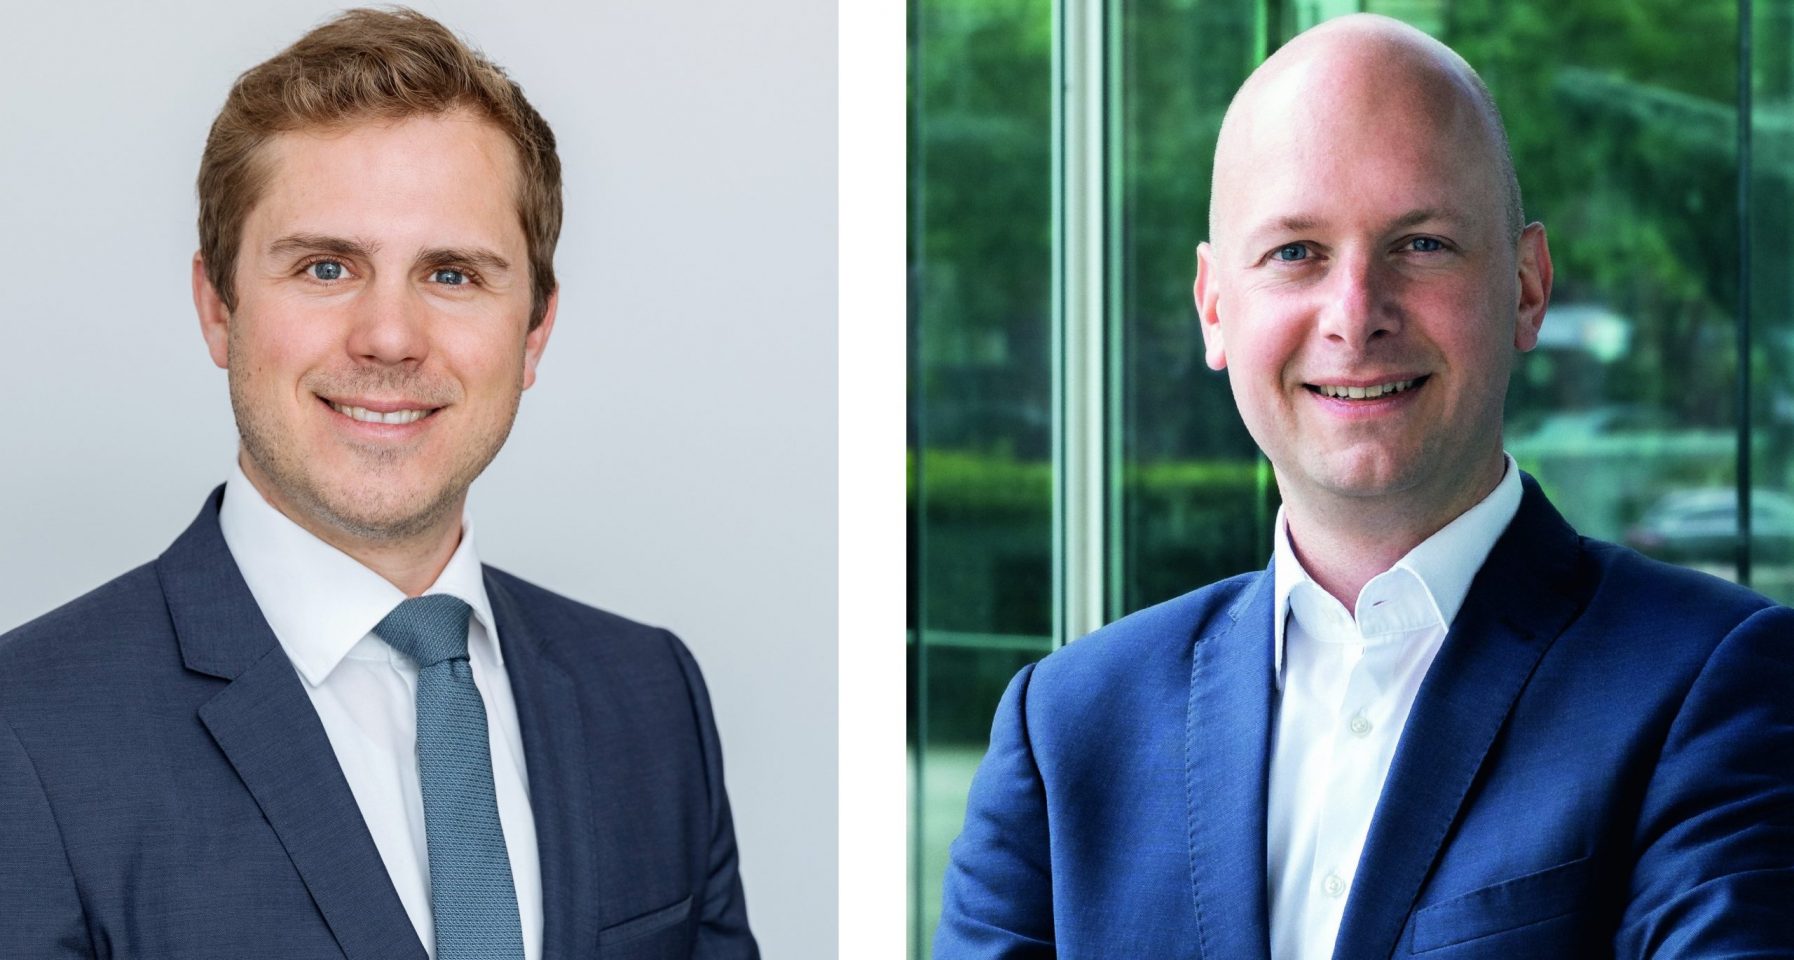 Interview mit Felix Embacher MRICS (Bereichsleiter Research & Data Science, bulwiengesa) und Henrik von Bothmer (Senior Investment Manager, Union Investment)